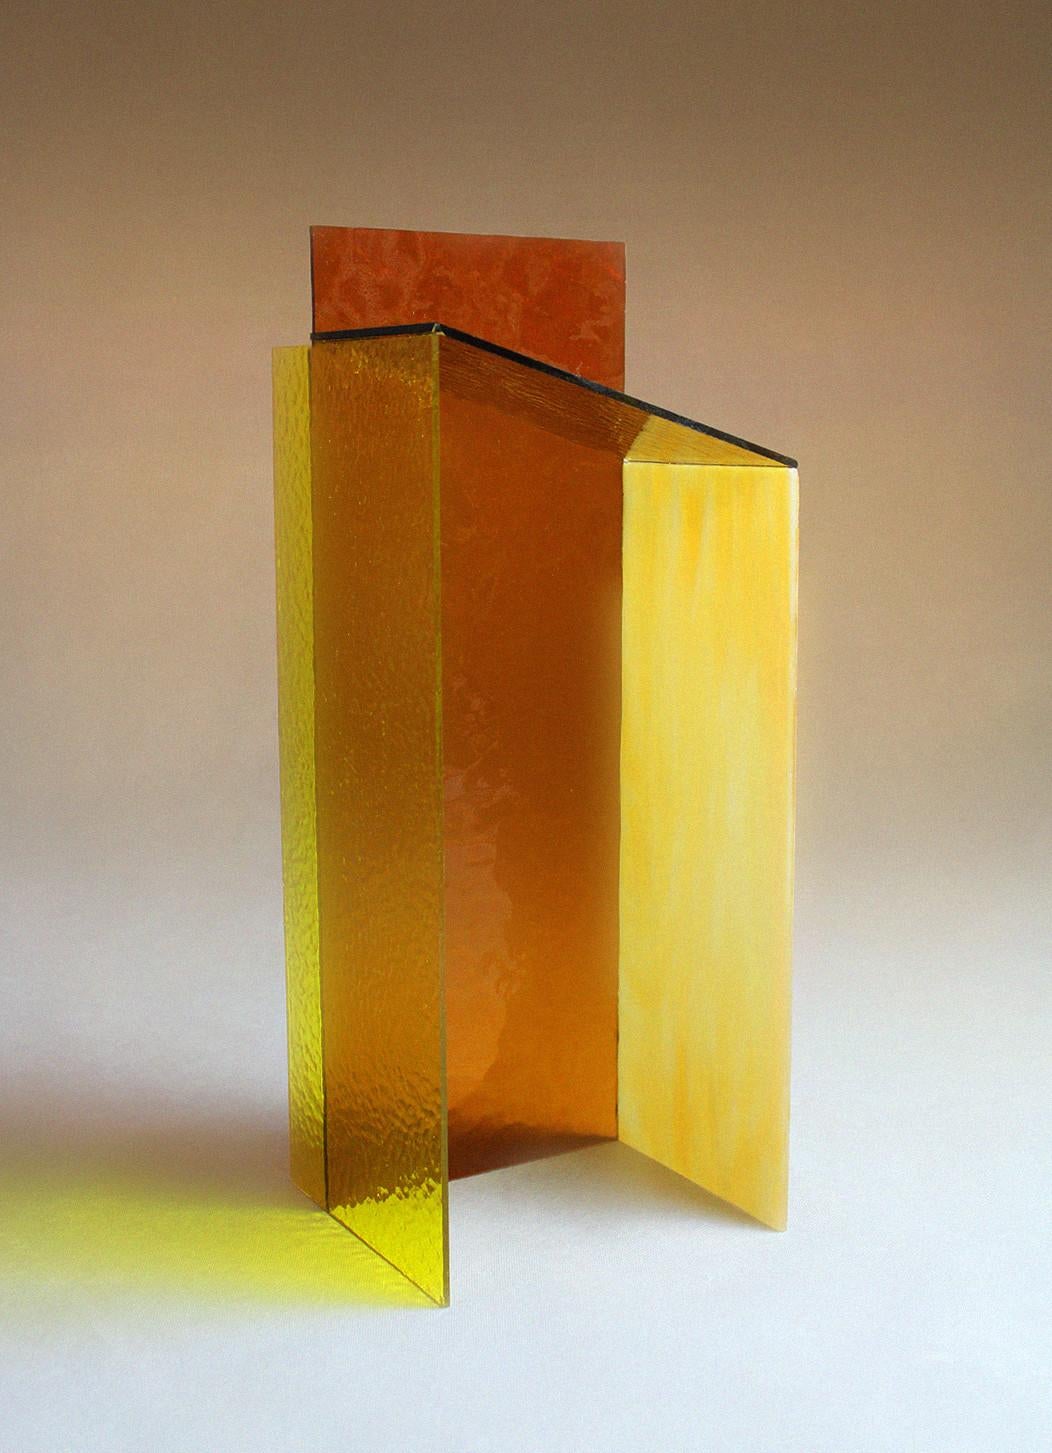 Jedes Objekt aus der Shape Series Collection von Studio Fleur Peters ist einzigartig. Diese gelbe Version sticht mit ihrer Mischung aus ockerfarbenem, orangefarbenem, gelbem und cremefarbenem Marmor sofort ins Auge. Die MATERIALIEN dieses